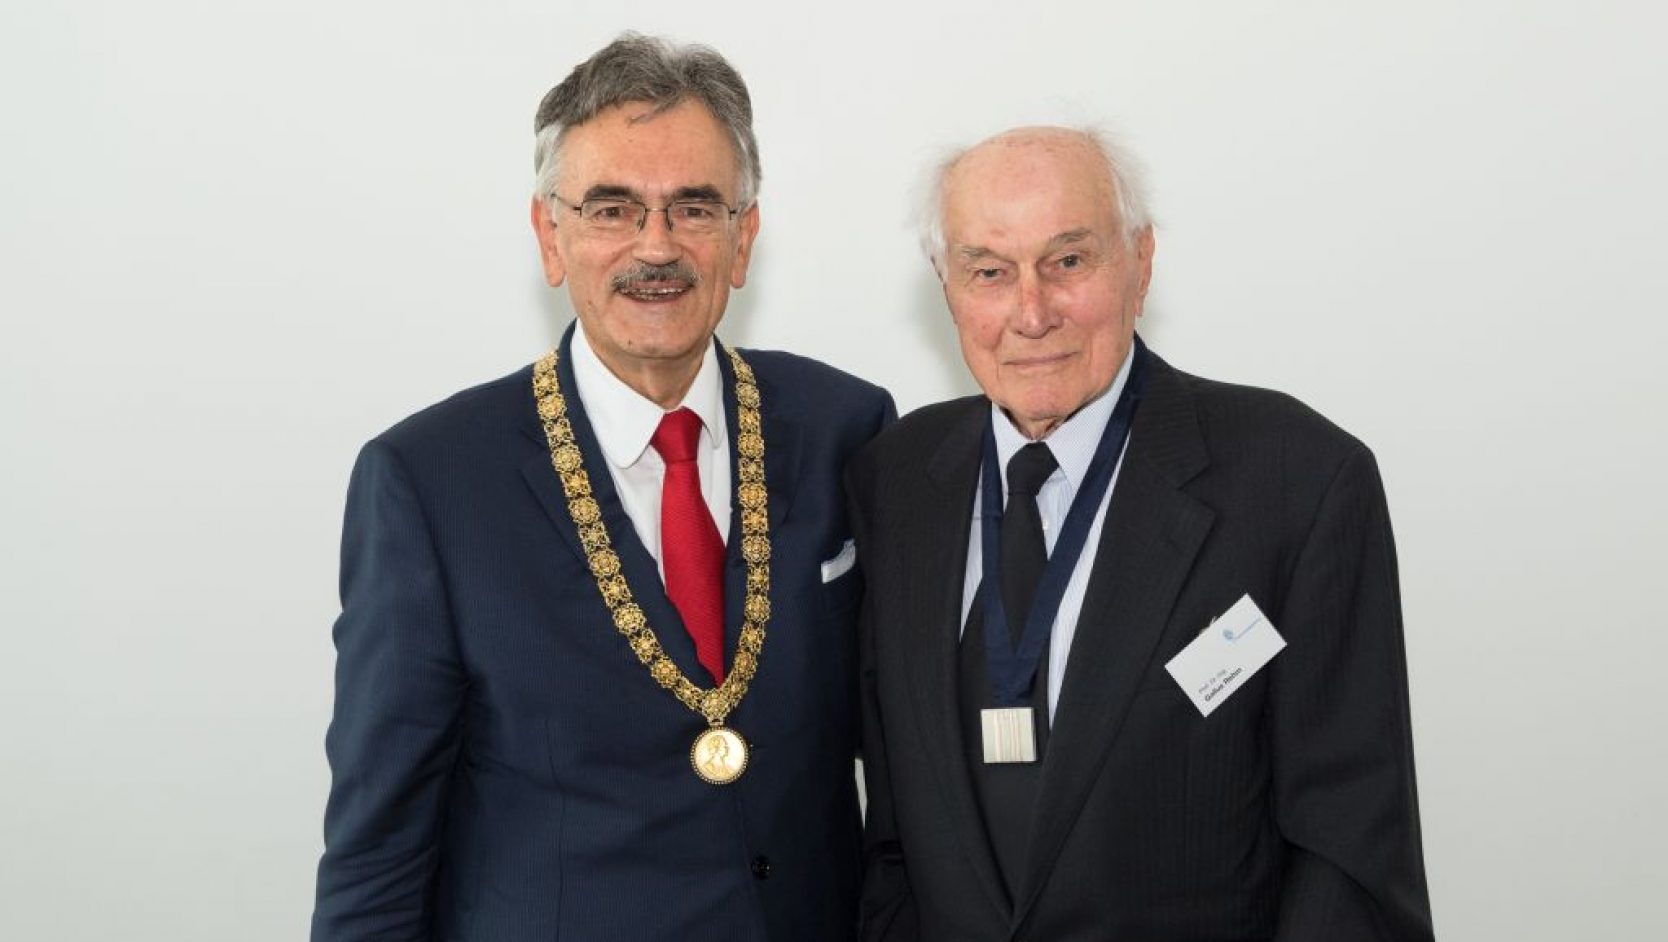 2018 wurde Gallus Rehm durch den damaligen TUM-Präsidenten Prof. Dr. Wolfgang A. Herrmann die Ehrensenatorwürde der TUM verliehen.